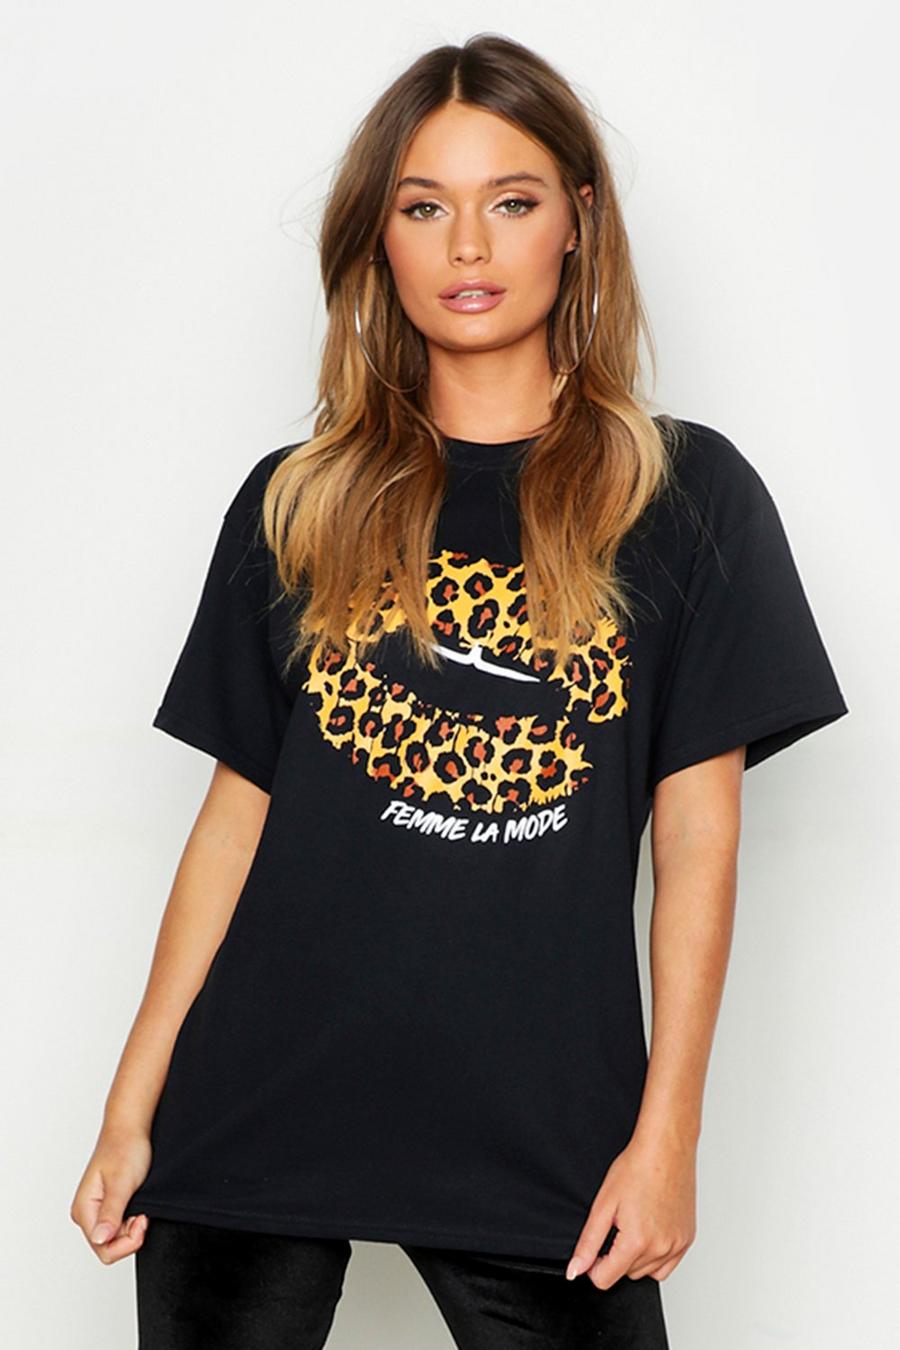 Camiseta con estampado de leopardo en forma de labios y eslogan “Femme”, Negro image number 1